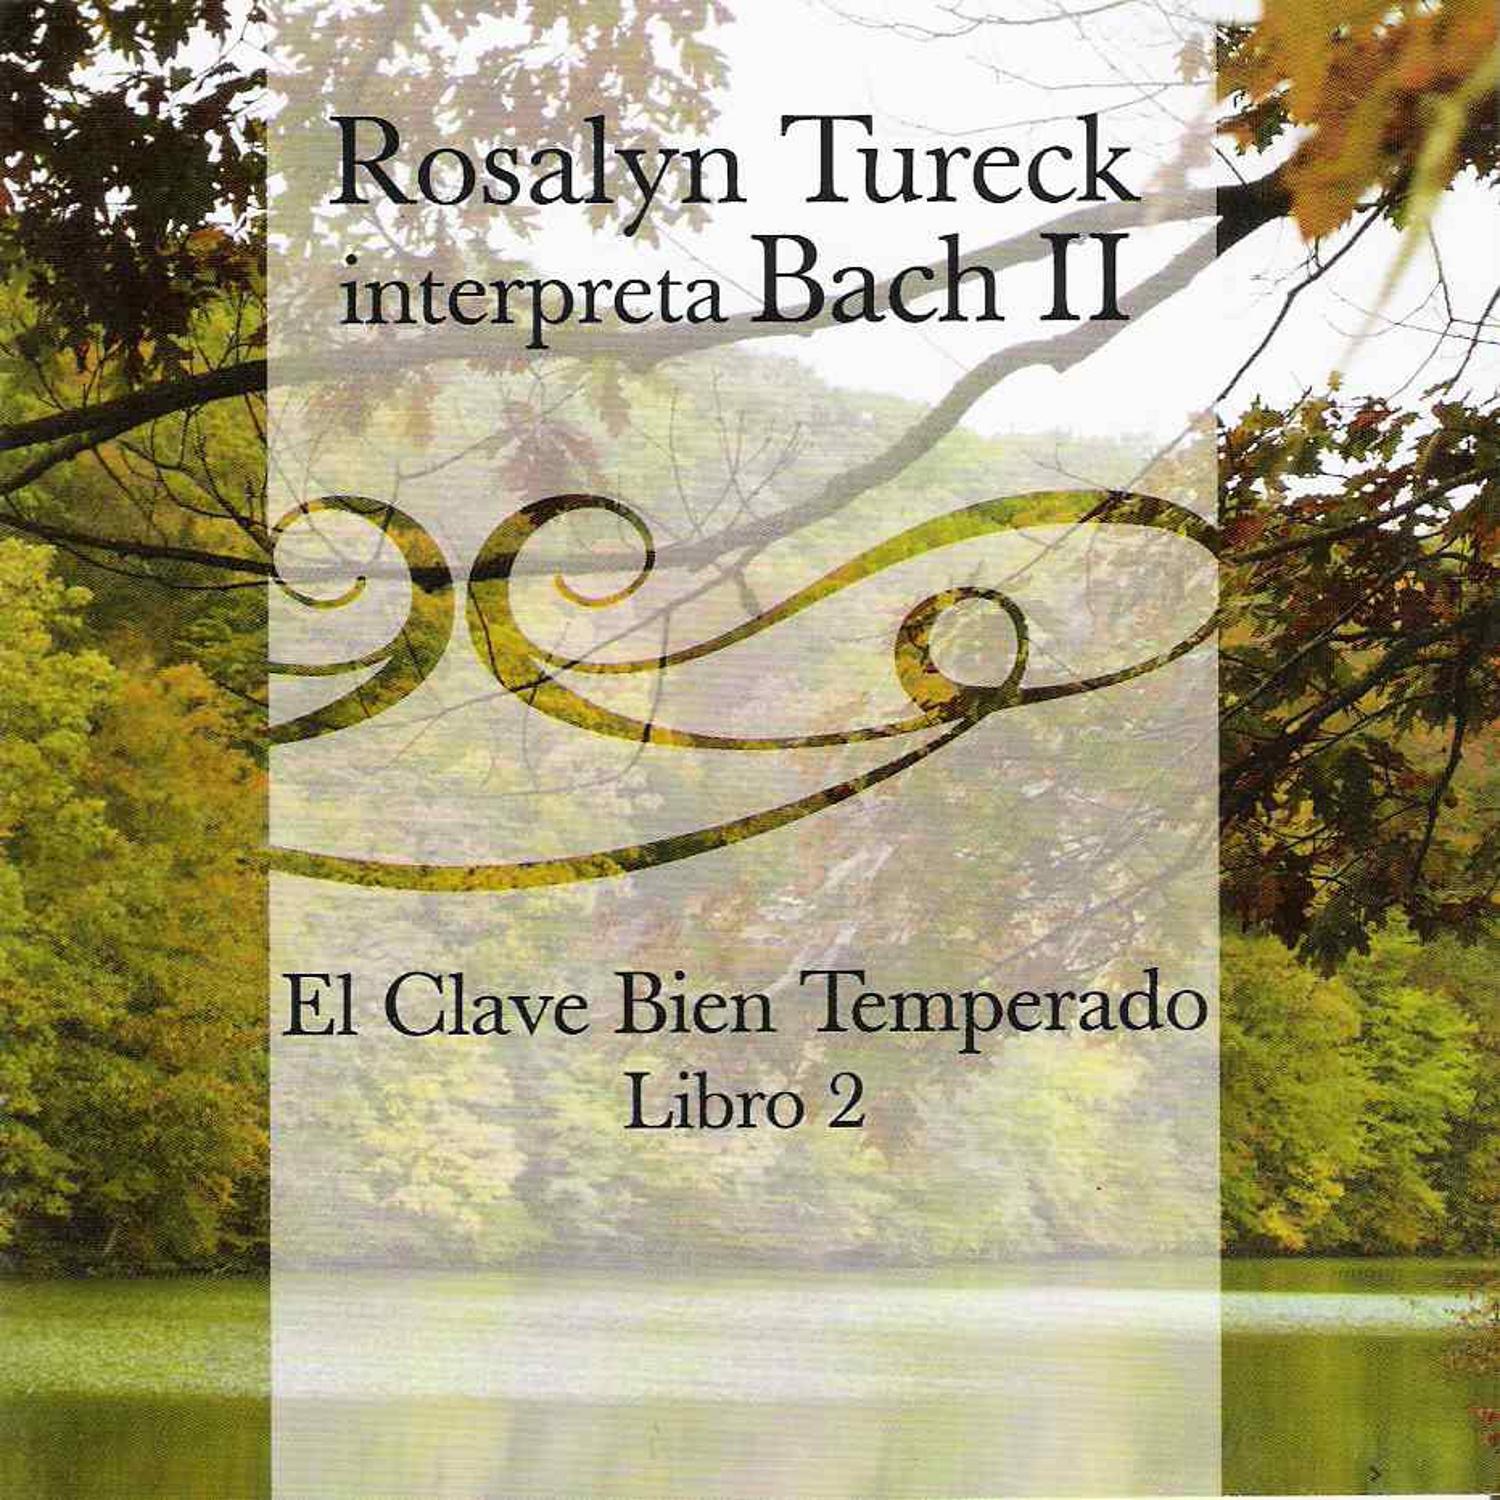 Rosalyn Tureck Interpreta Bach Vol. 2 (El Clave Bien Temperado Libro 2)